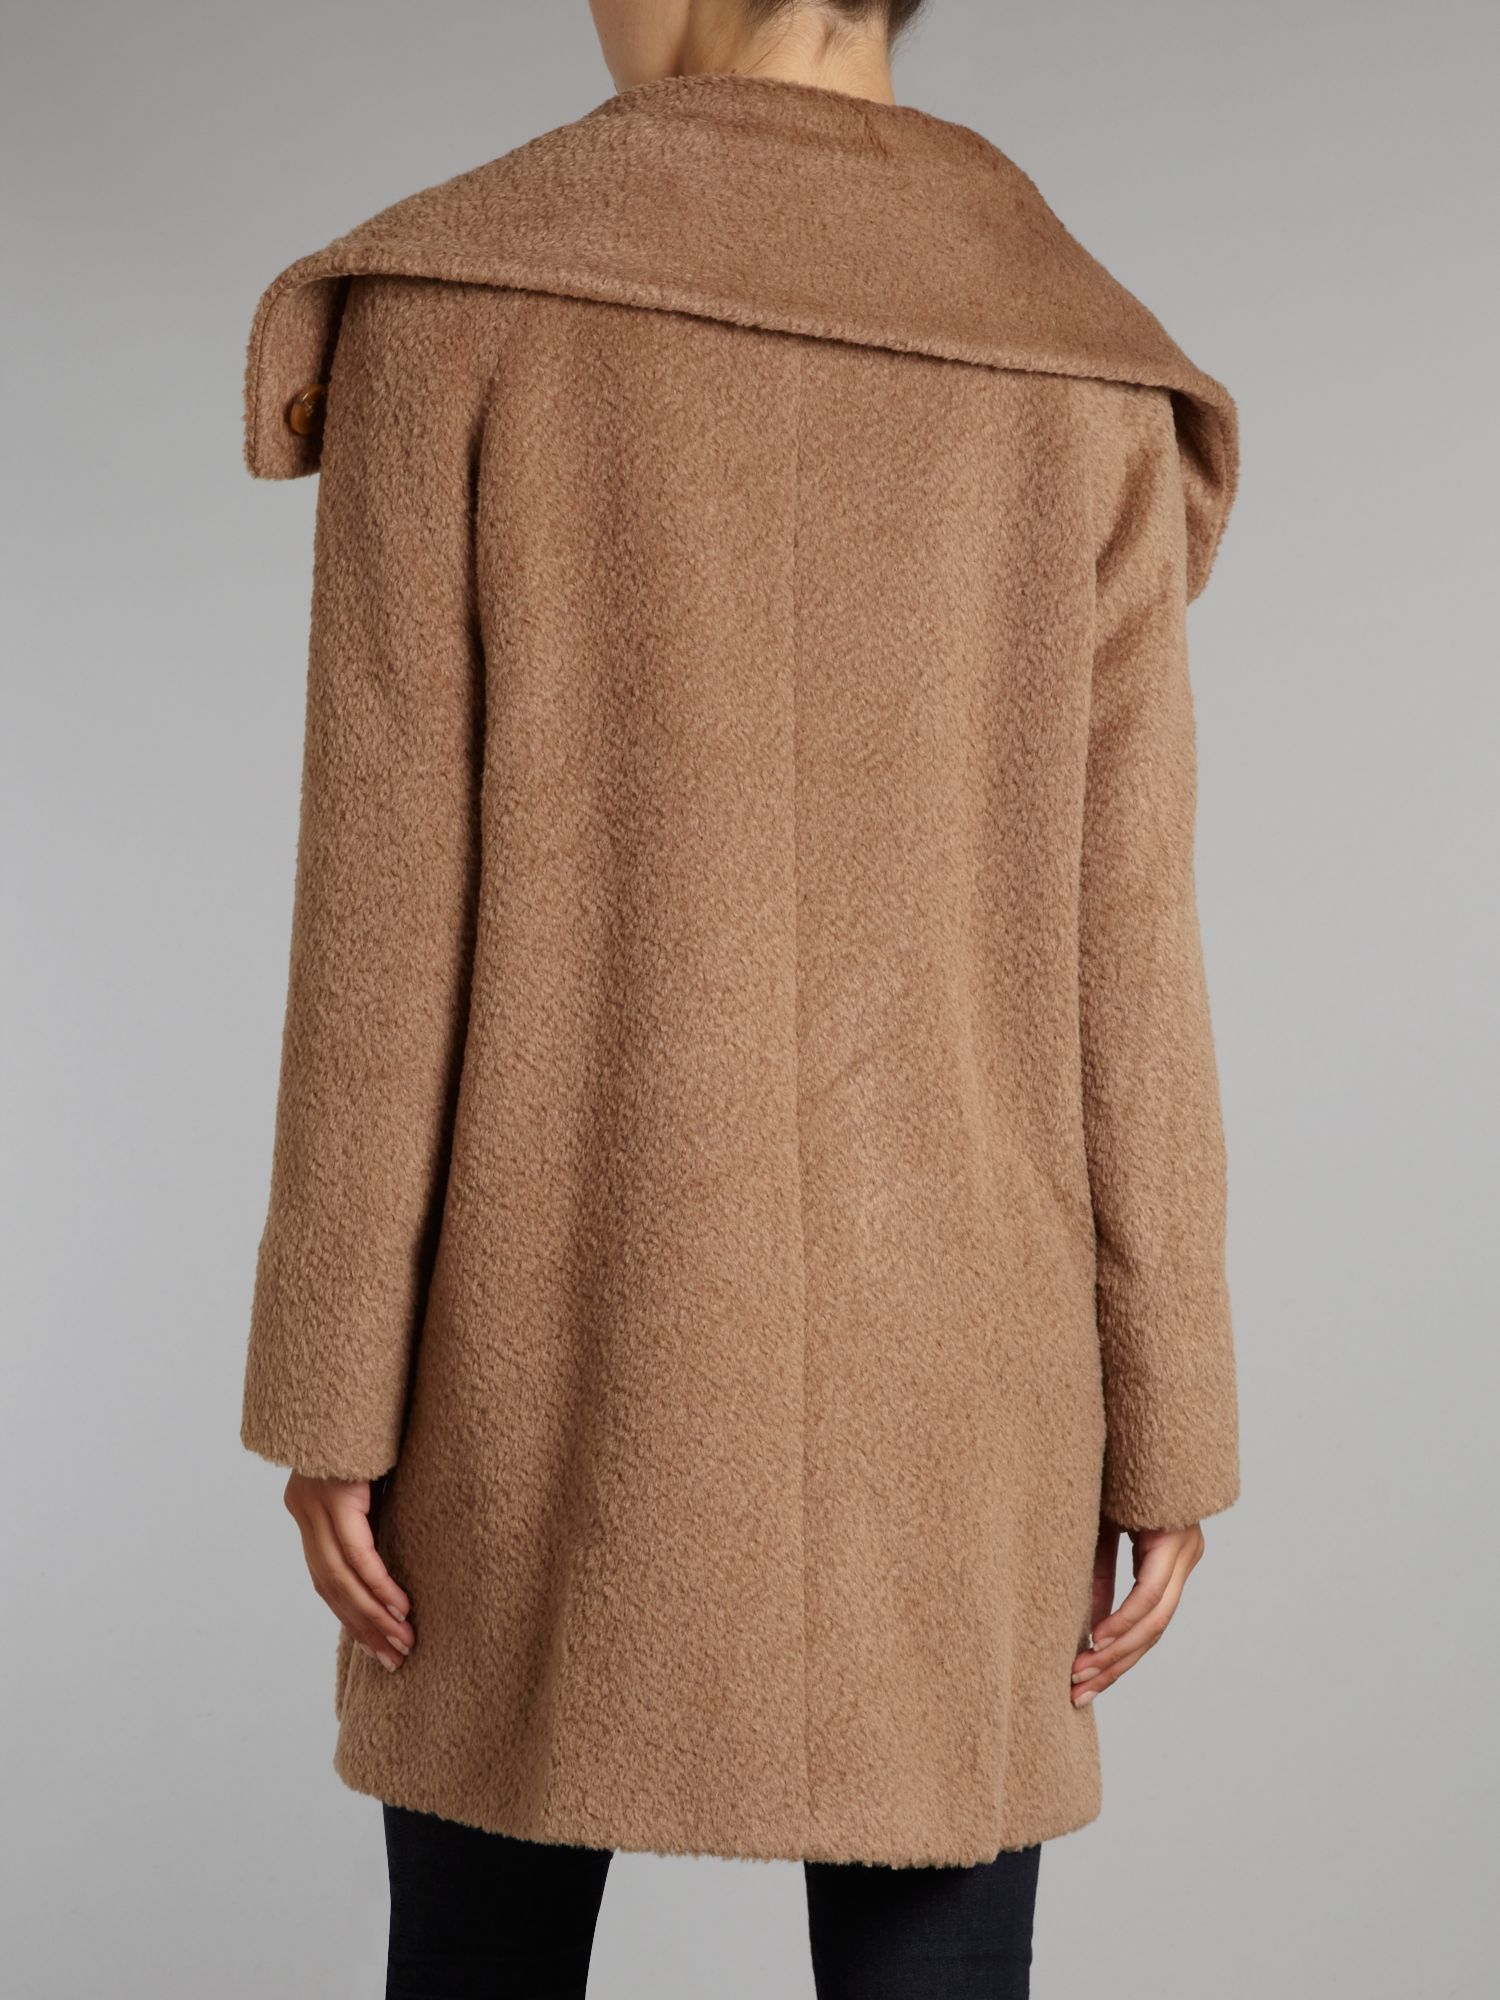 Max mara studio Marisa Alpaca Short Coat in Brown | Lyst